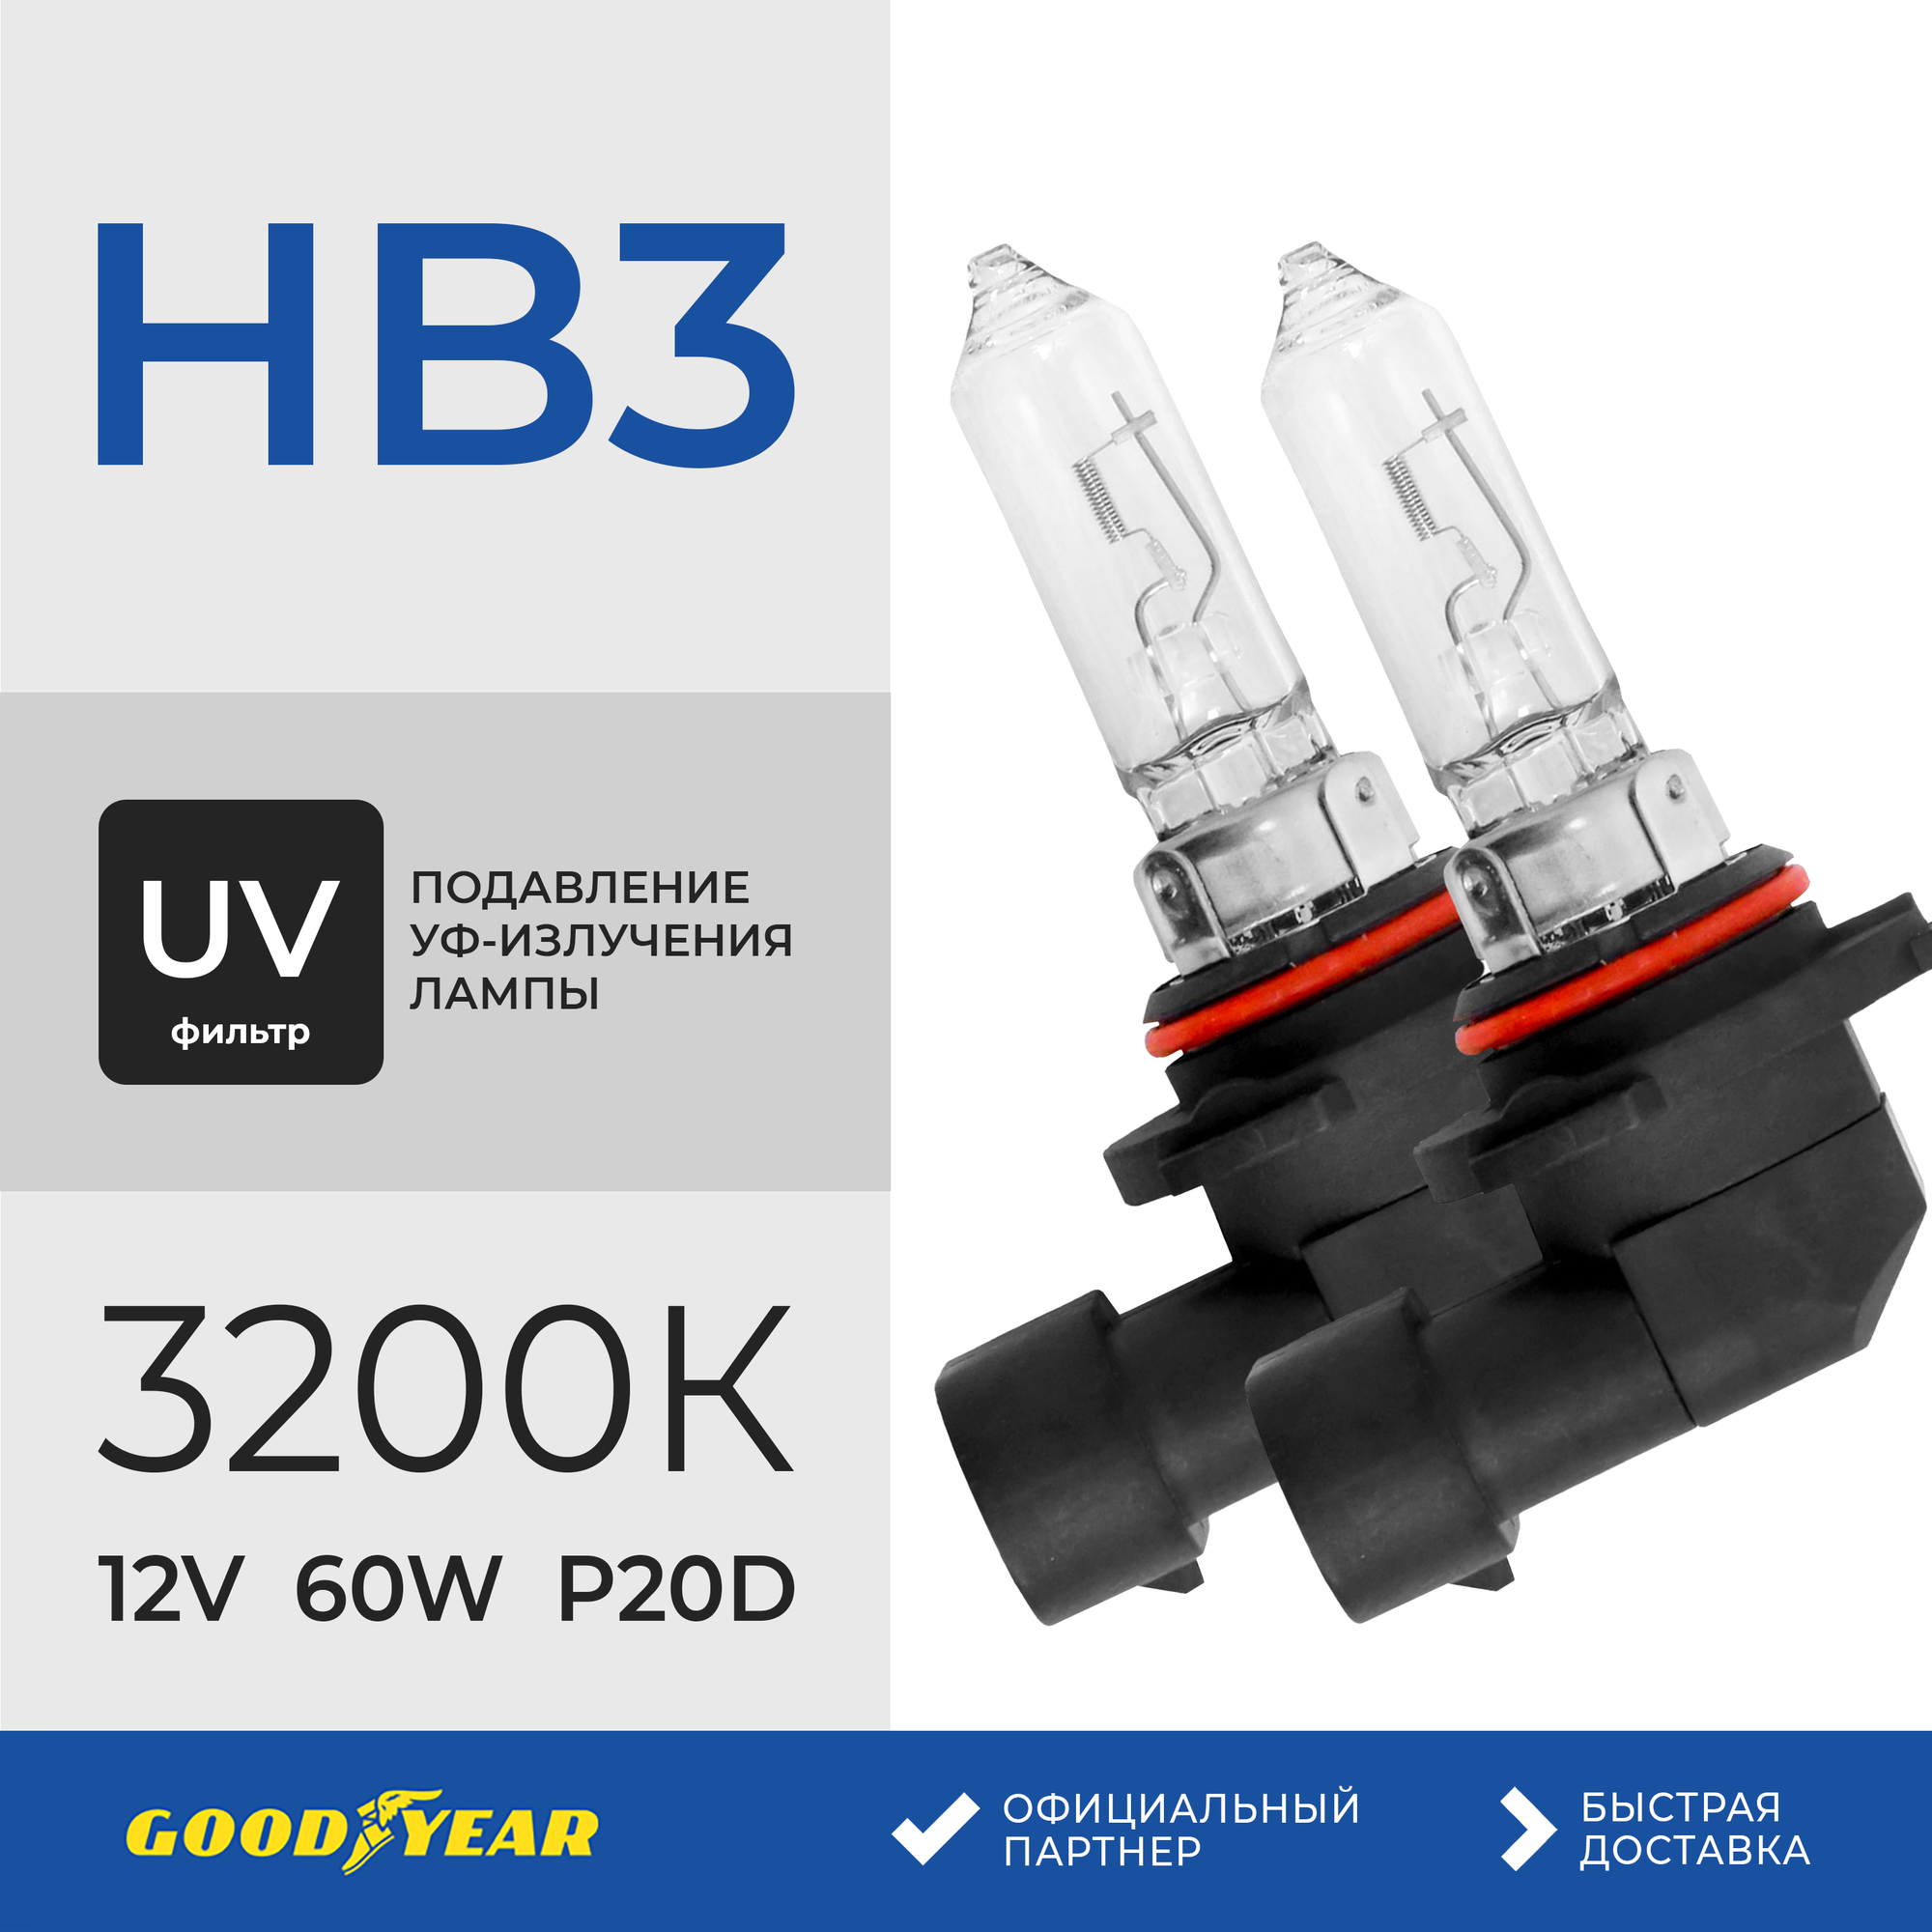 Лампа автомобильная галогенная Goodyear HB3+ UV фильтр 12V 60W P20d 3200К